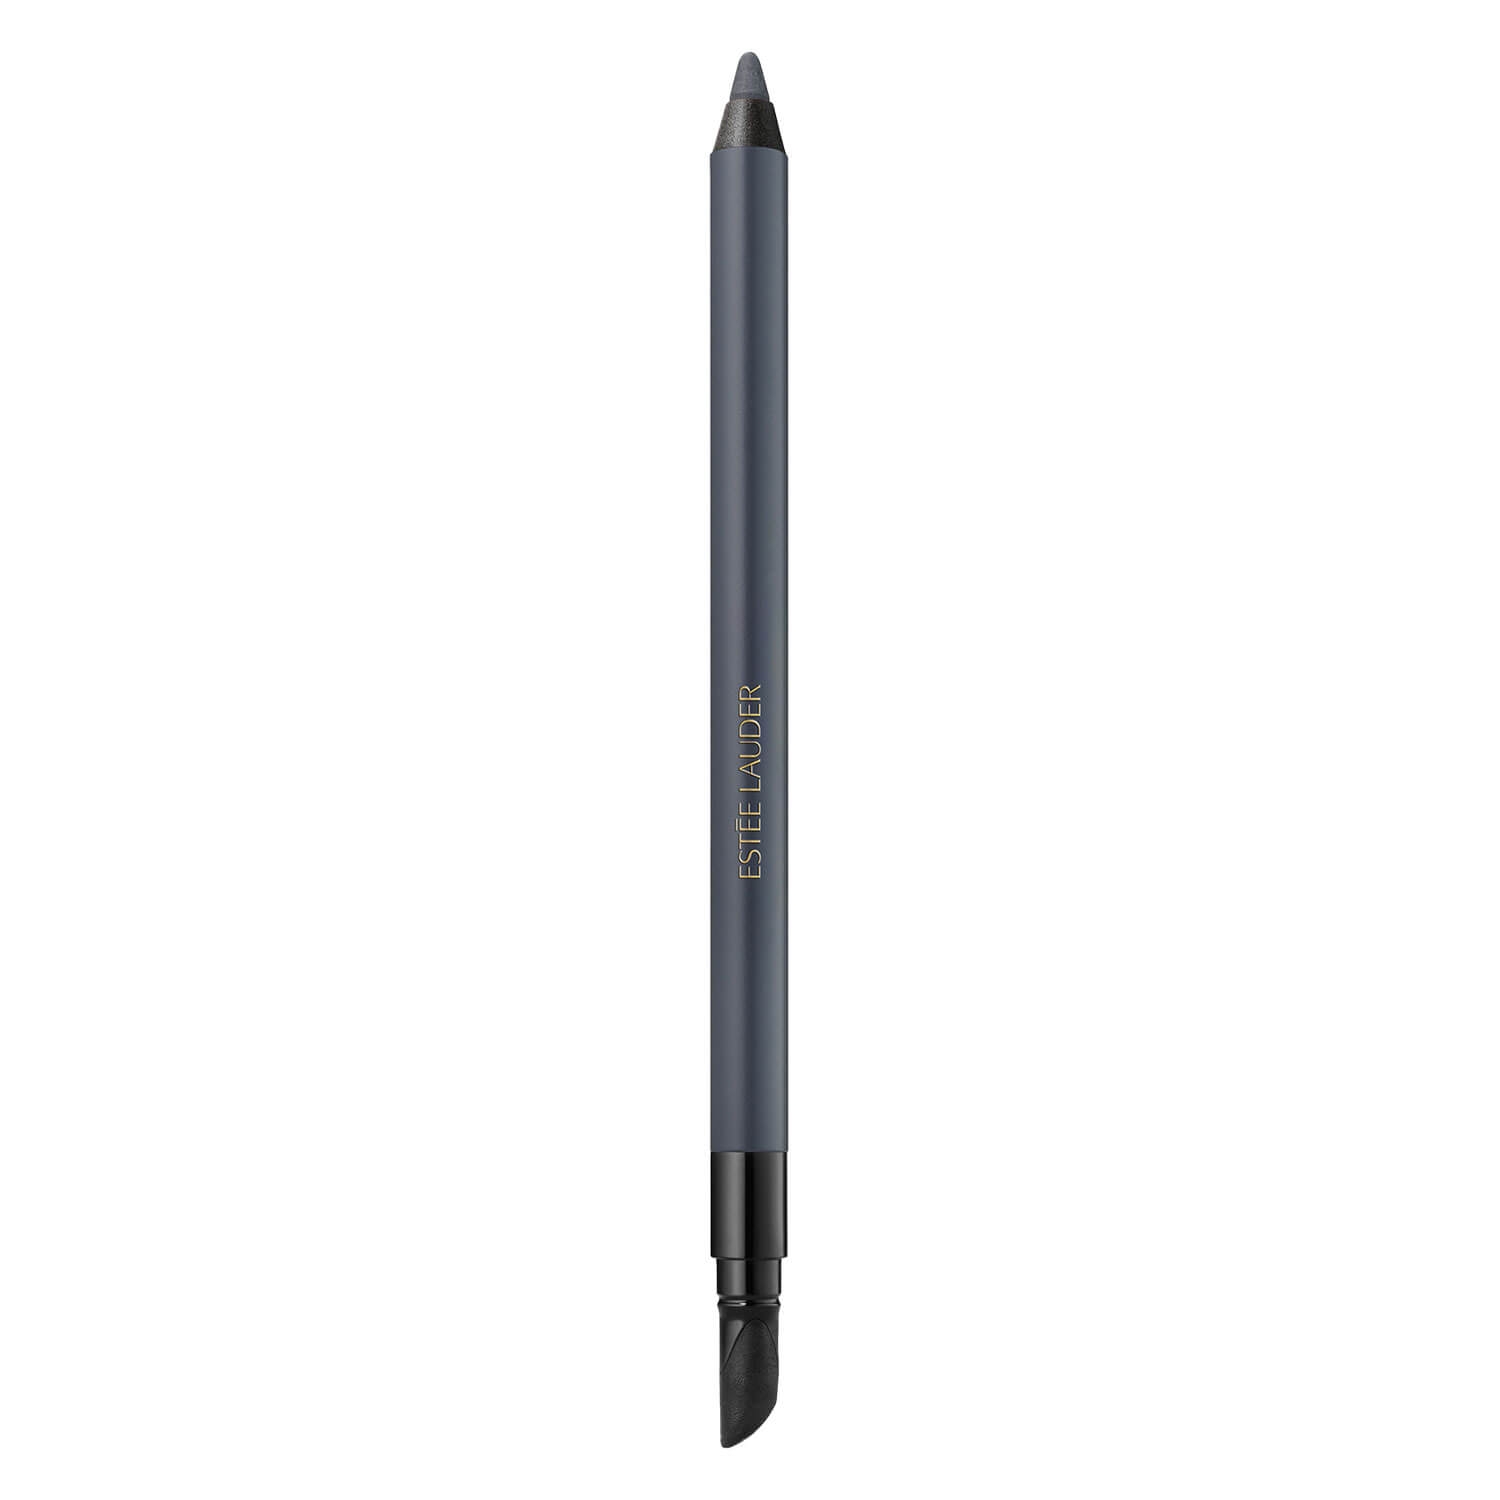 Produktbild von Double Wear - 24H Waterproof Gel Eye Pencil Smoke